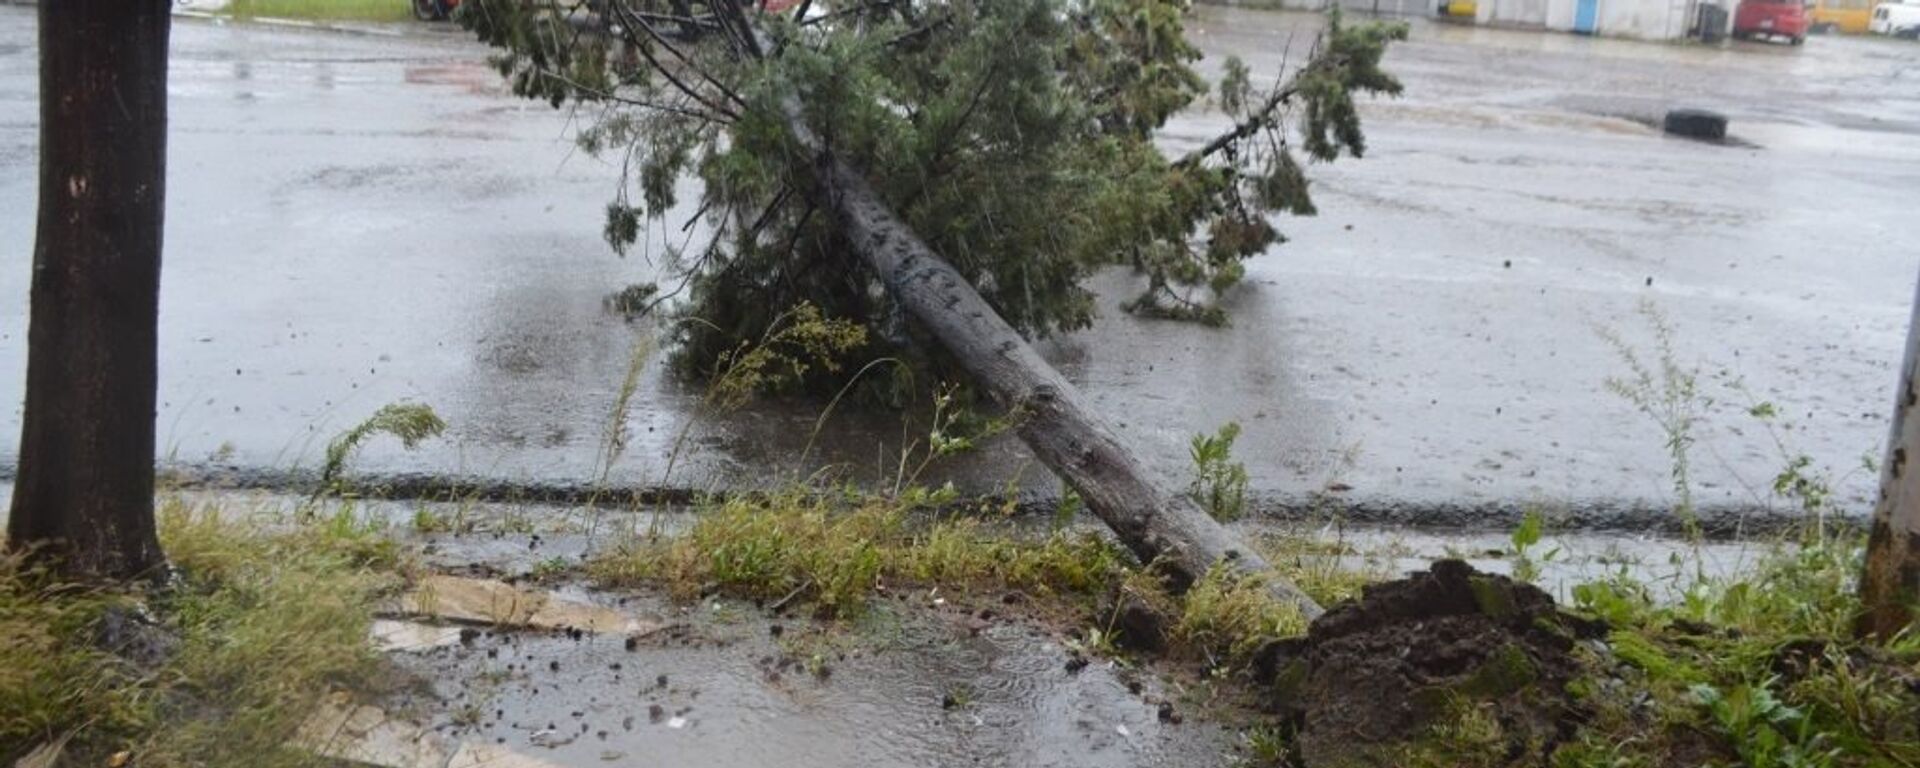 Ветер и сильный дождь повалили деревья в Поти - Sputnik Грузия, 1920, 20.04.2021